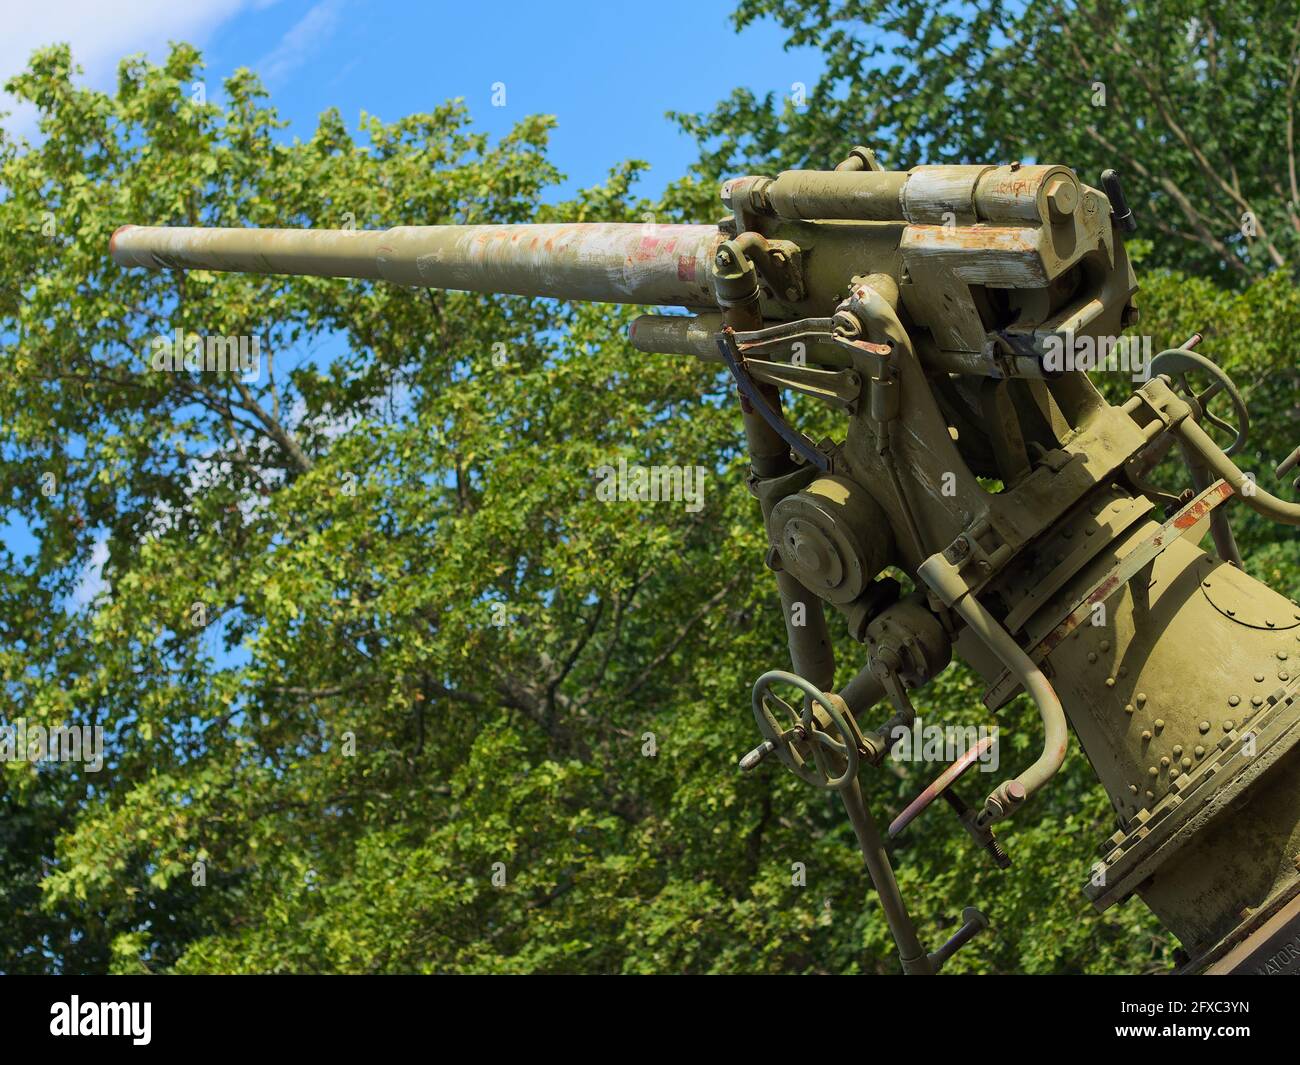 Turku Air Defense Memorial Cannon es un despliegue de artillería estática de un histórico cañón antiaéreo Bofors de 75 mm M30 en Vartiovuori, Turku, Finlandia. Foto de stock